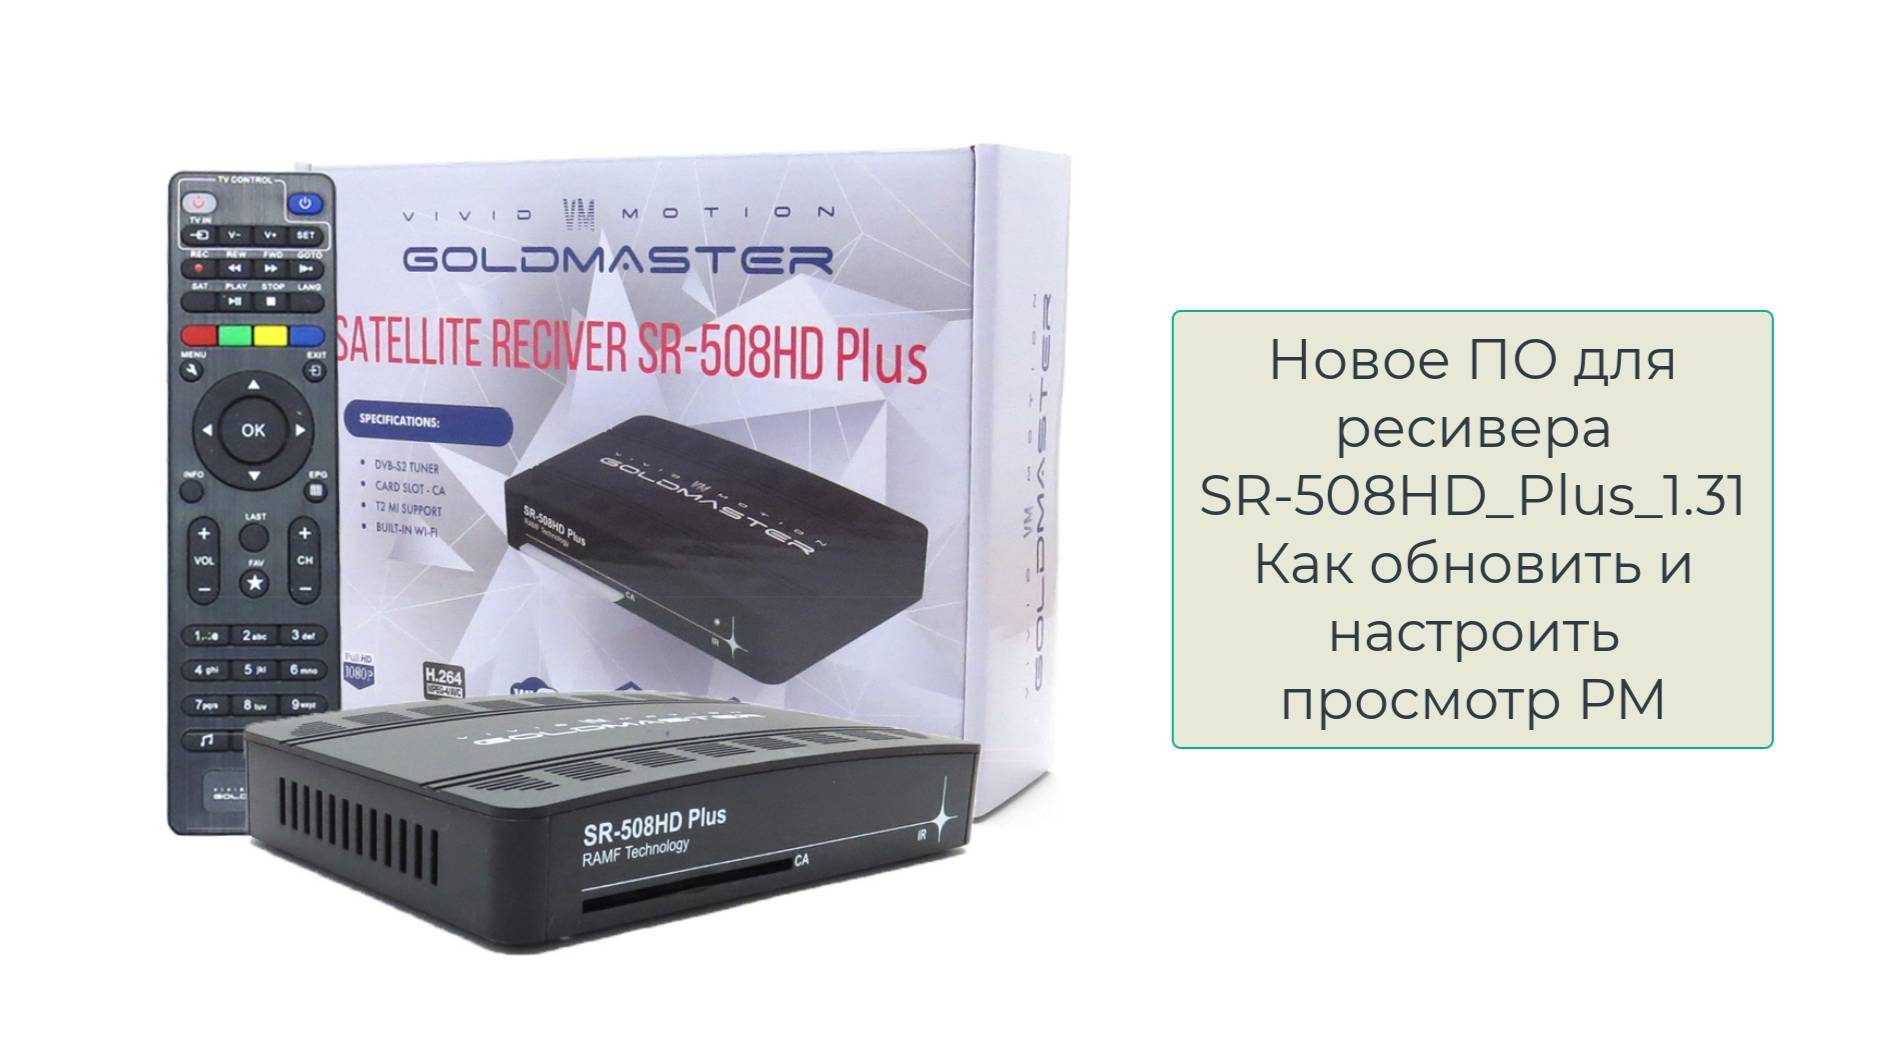 Спутниковый ресивер GoldMaster SR-508HD plus, WiFi, T2MI, IPTV, РМ - новая прошивка с Русским Миром